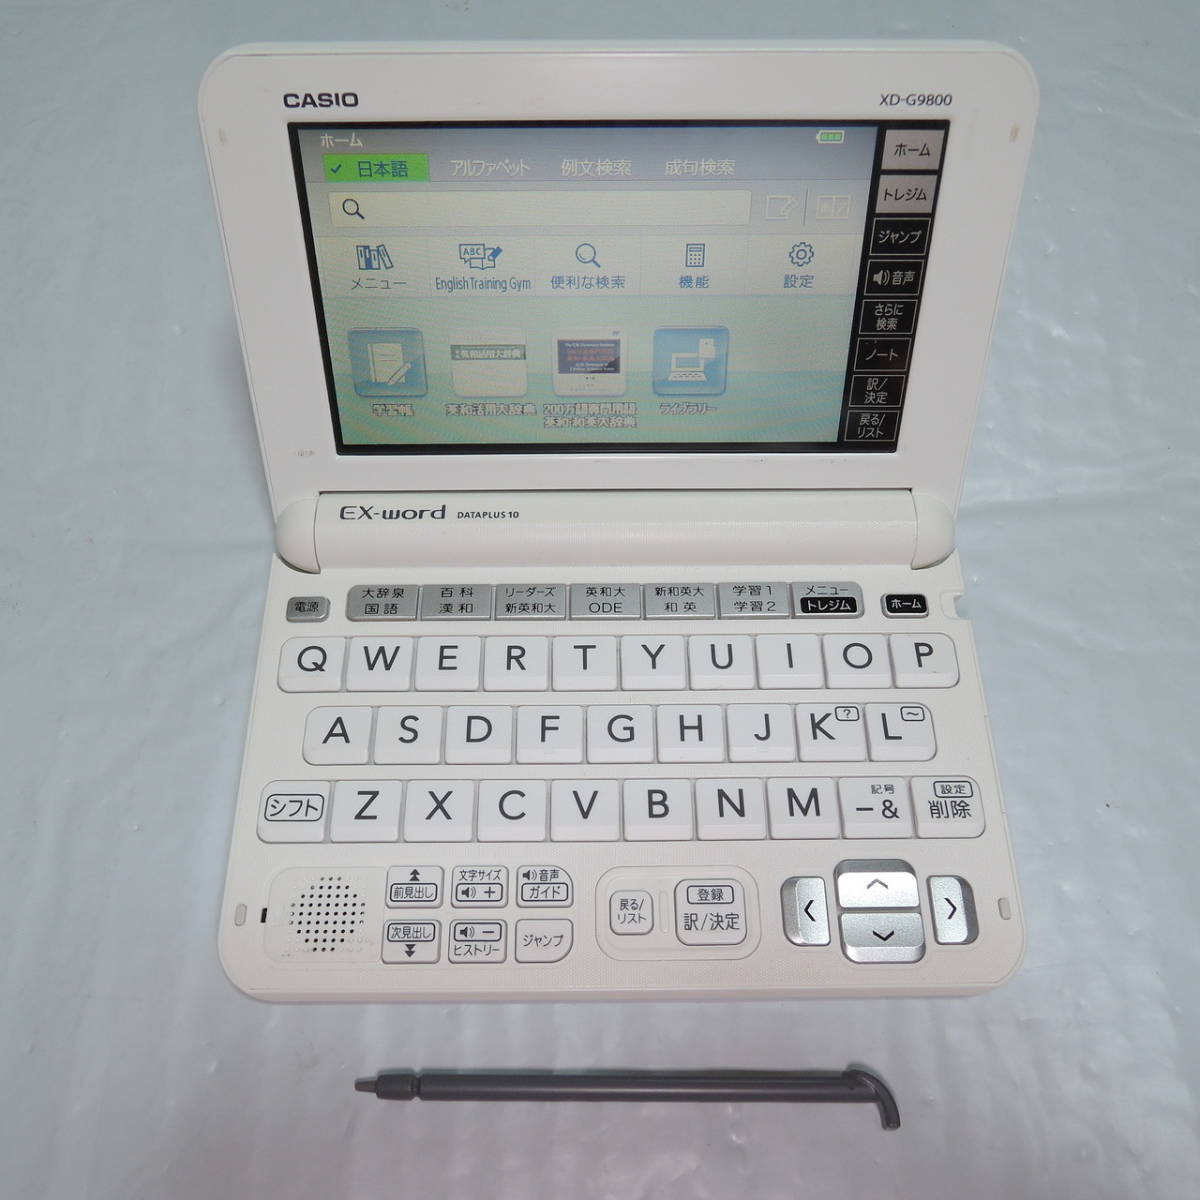 カシオ XD-G9800 電子辞書 150冊 商品细节 | Yahoo! JAPAN Auction